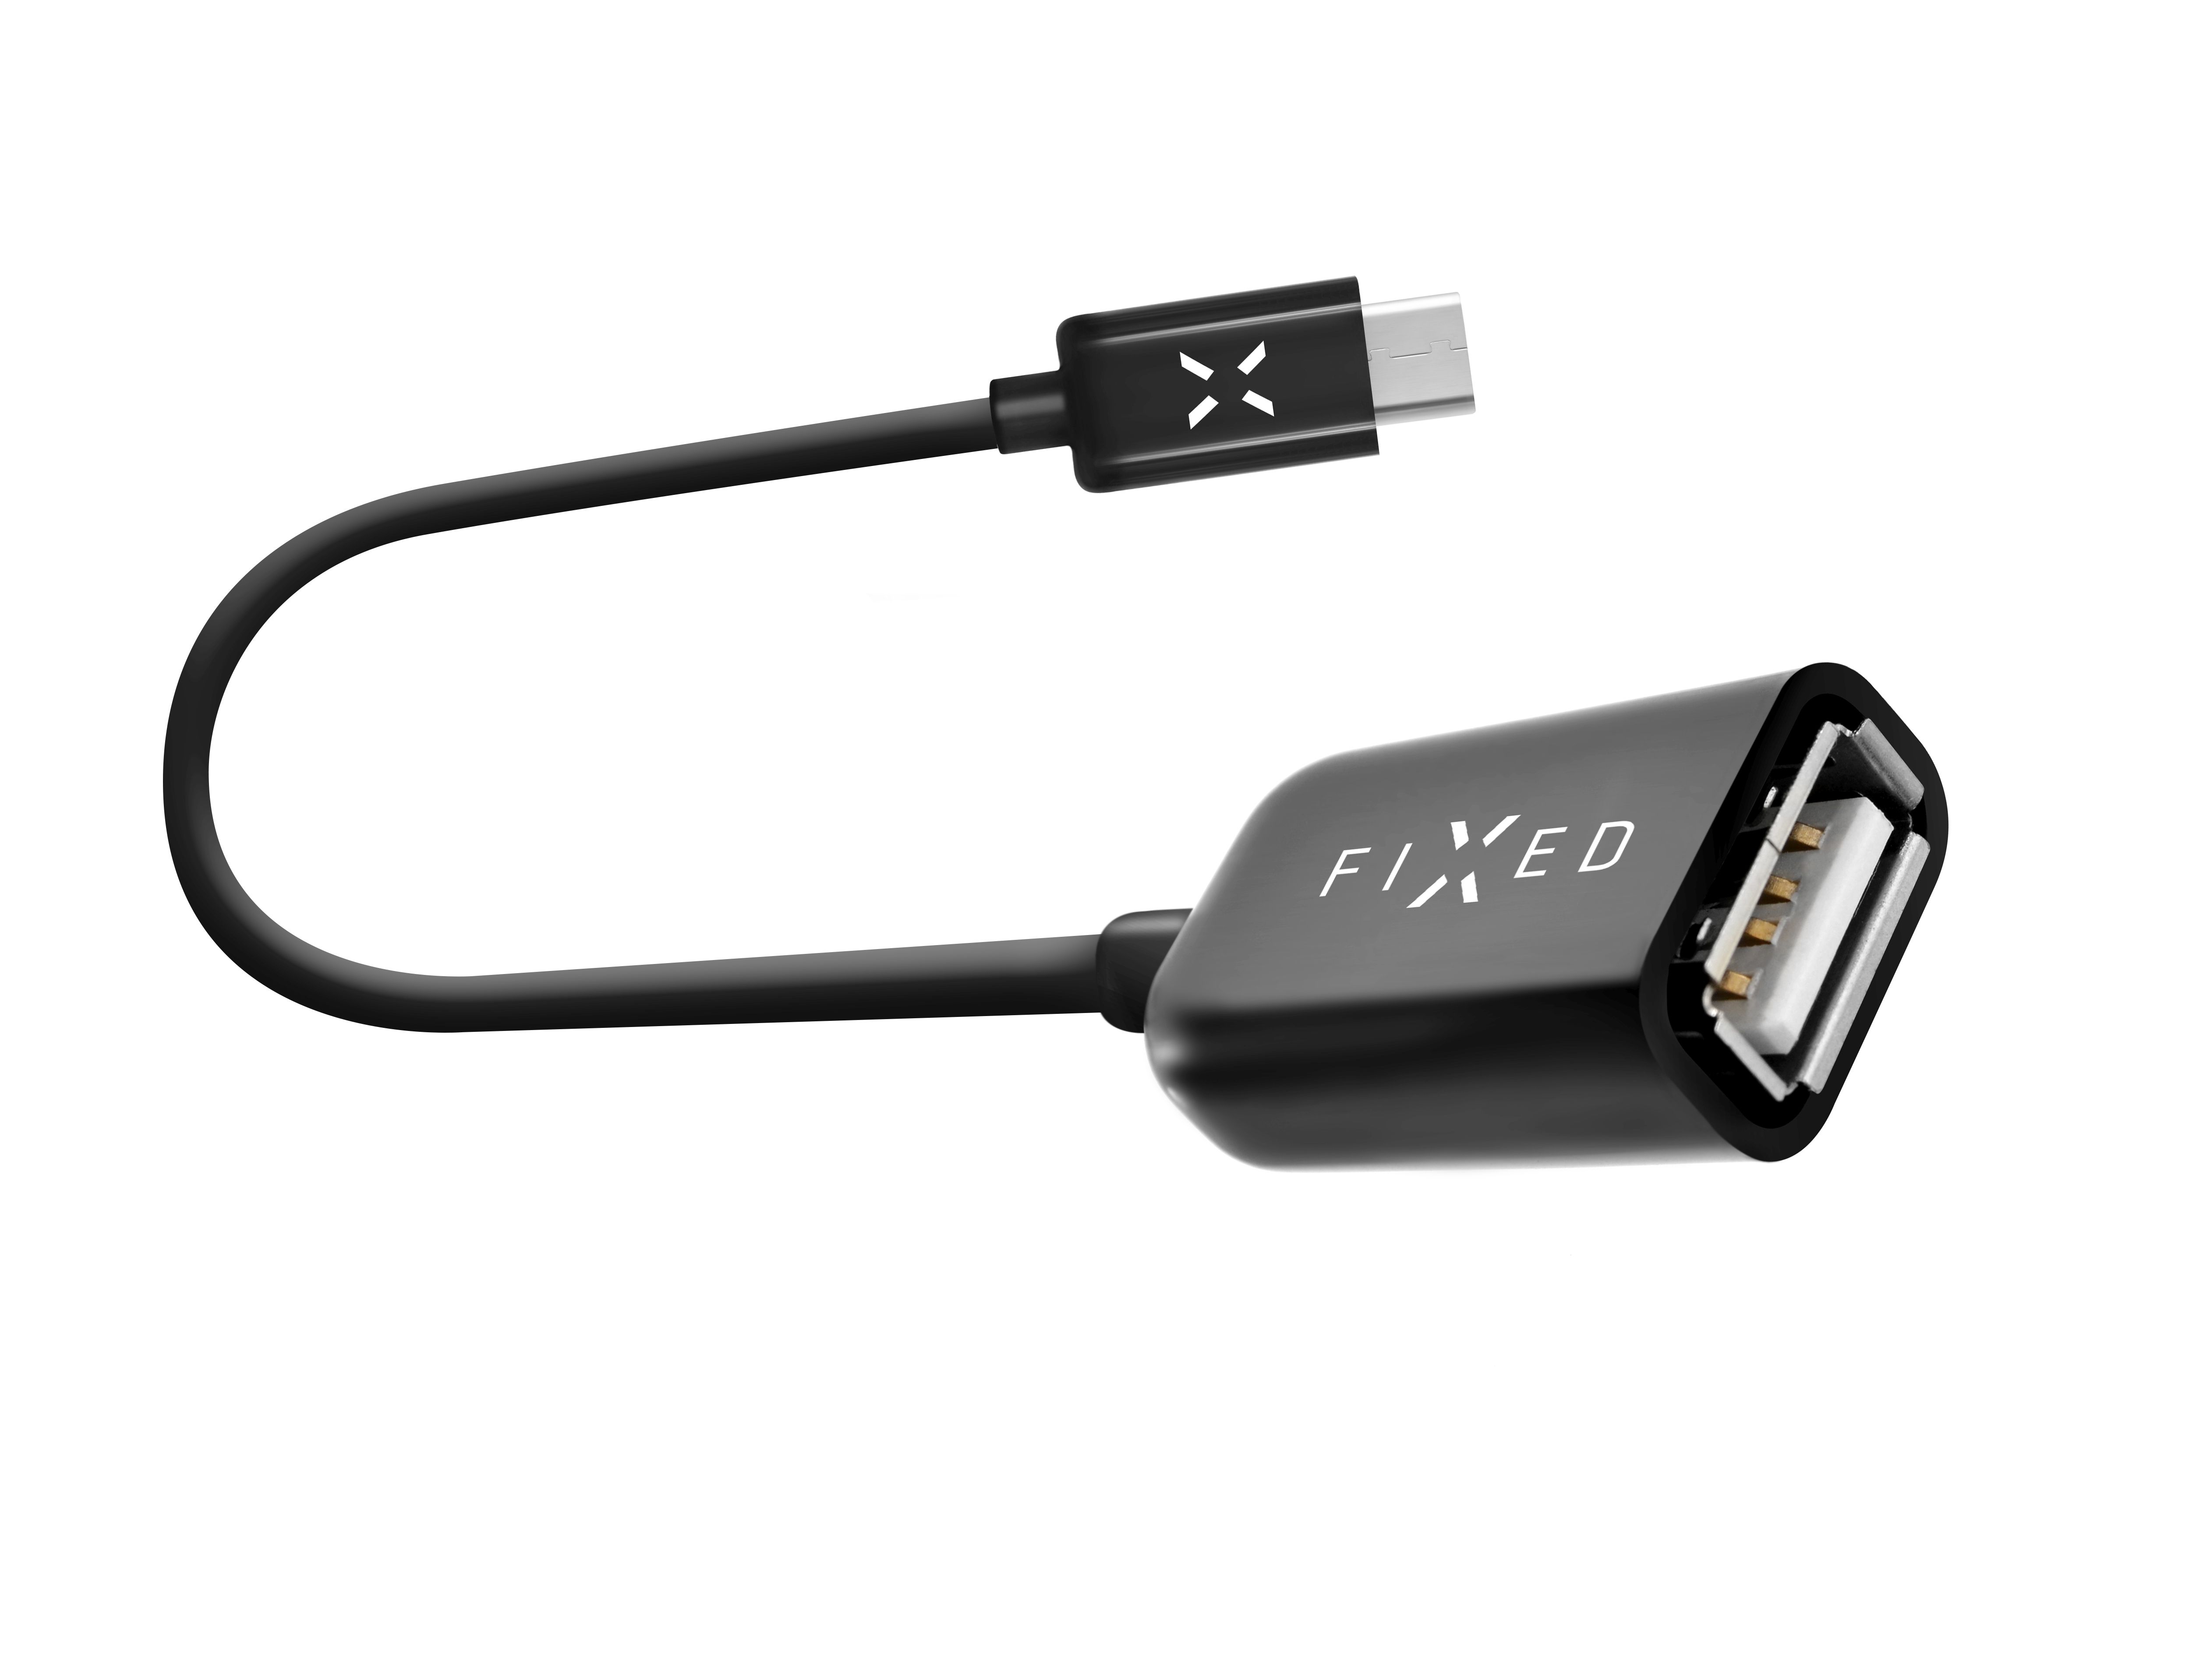 Usb fix. USB C OTG. USB host (OTG). USB-C to USB-A male Adapter. OTG кабель USB Type c с дополнительным питанием.